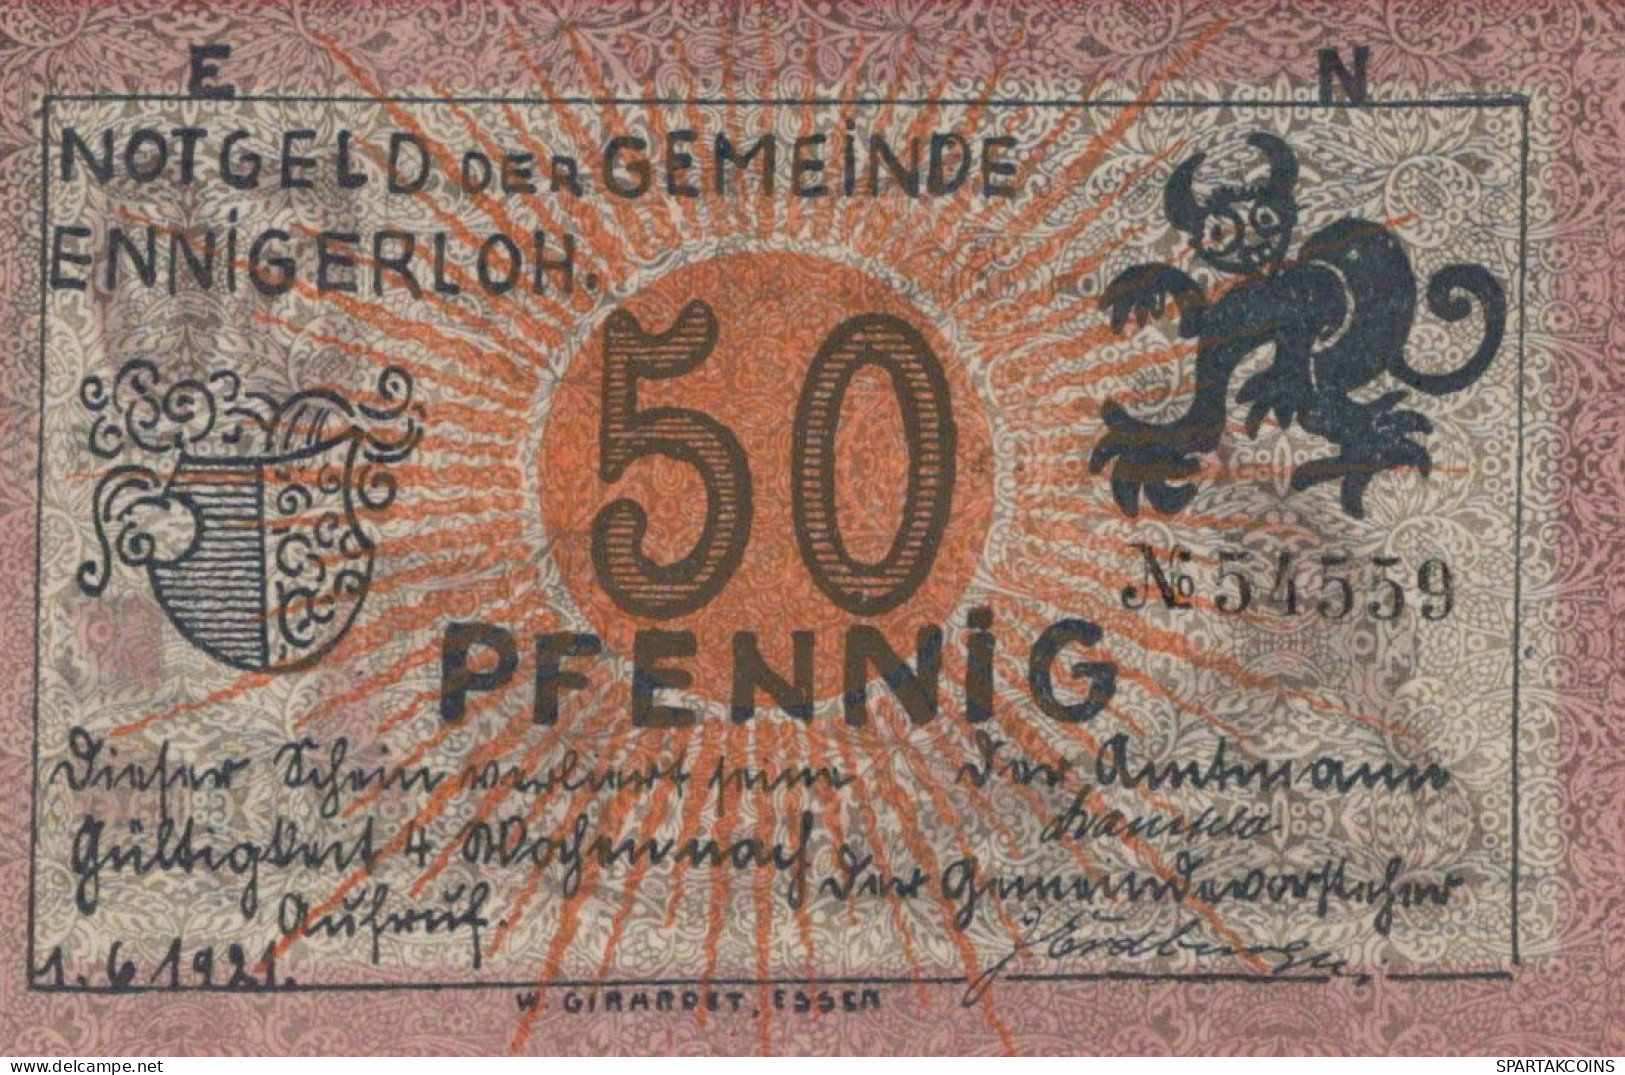 50 PFENNIG 1921 Stadt ENNIGERLOH Westphalia UNC DEUTSCHLAND Notgeld #PB249 - [11] Local Banknote Issues